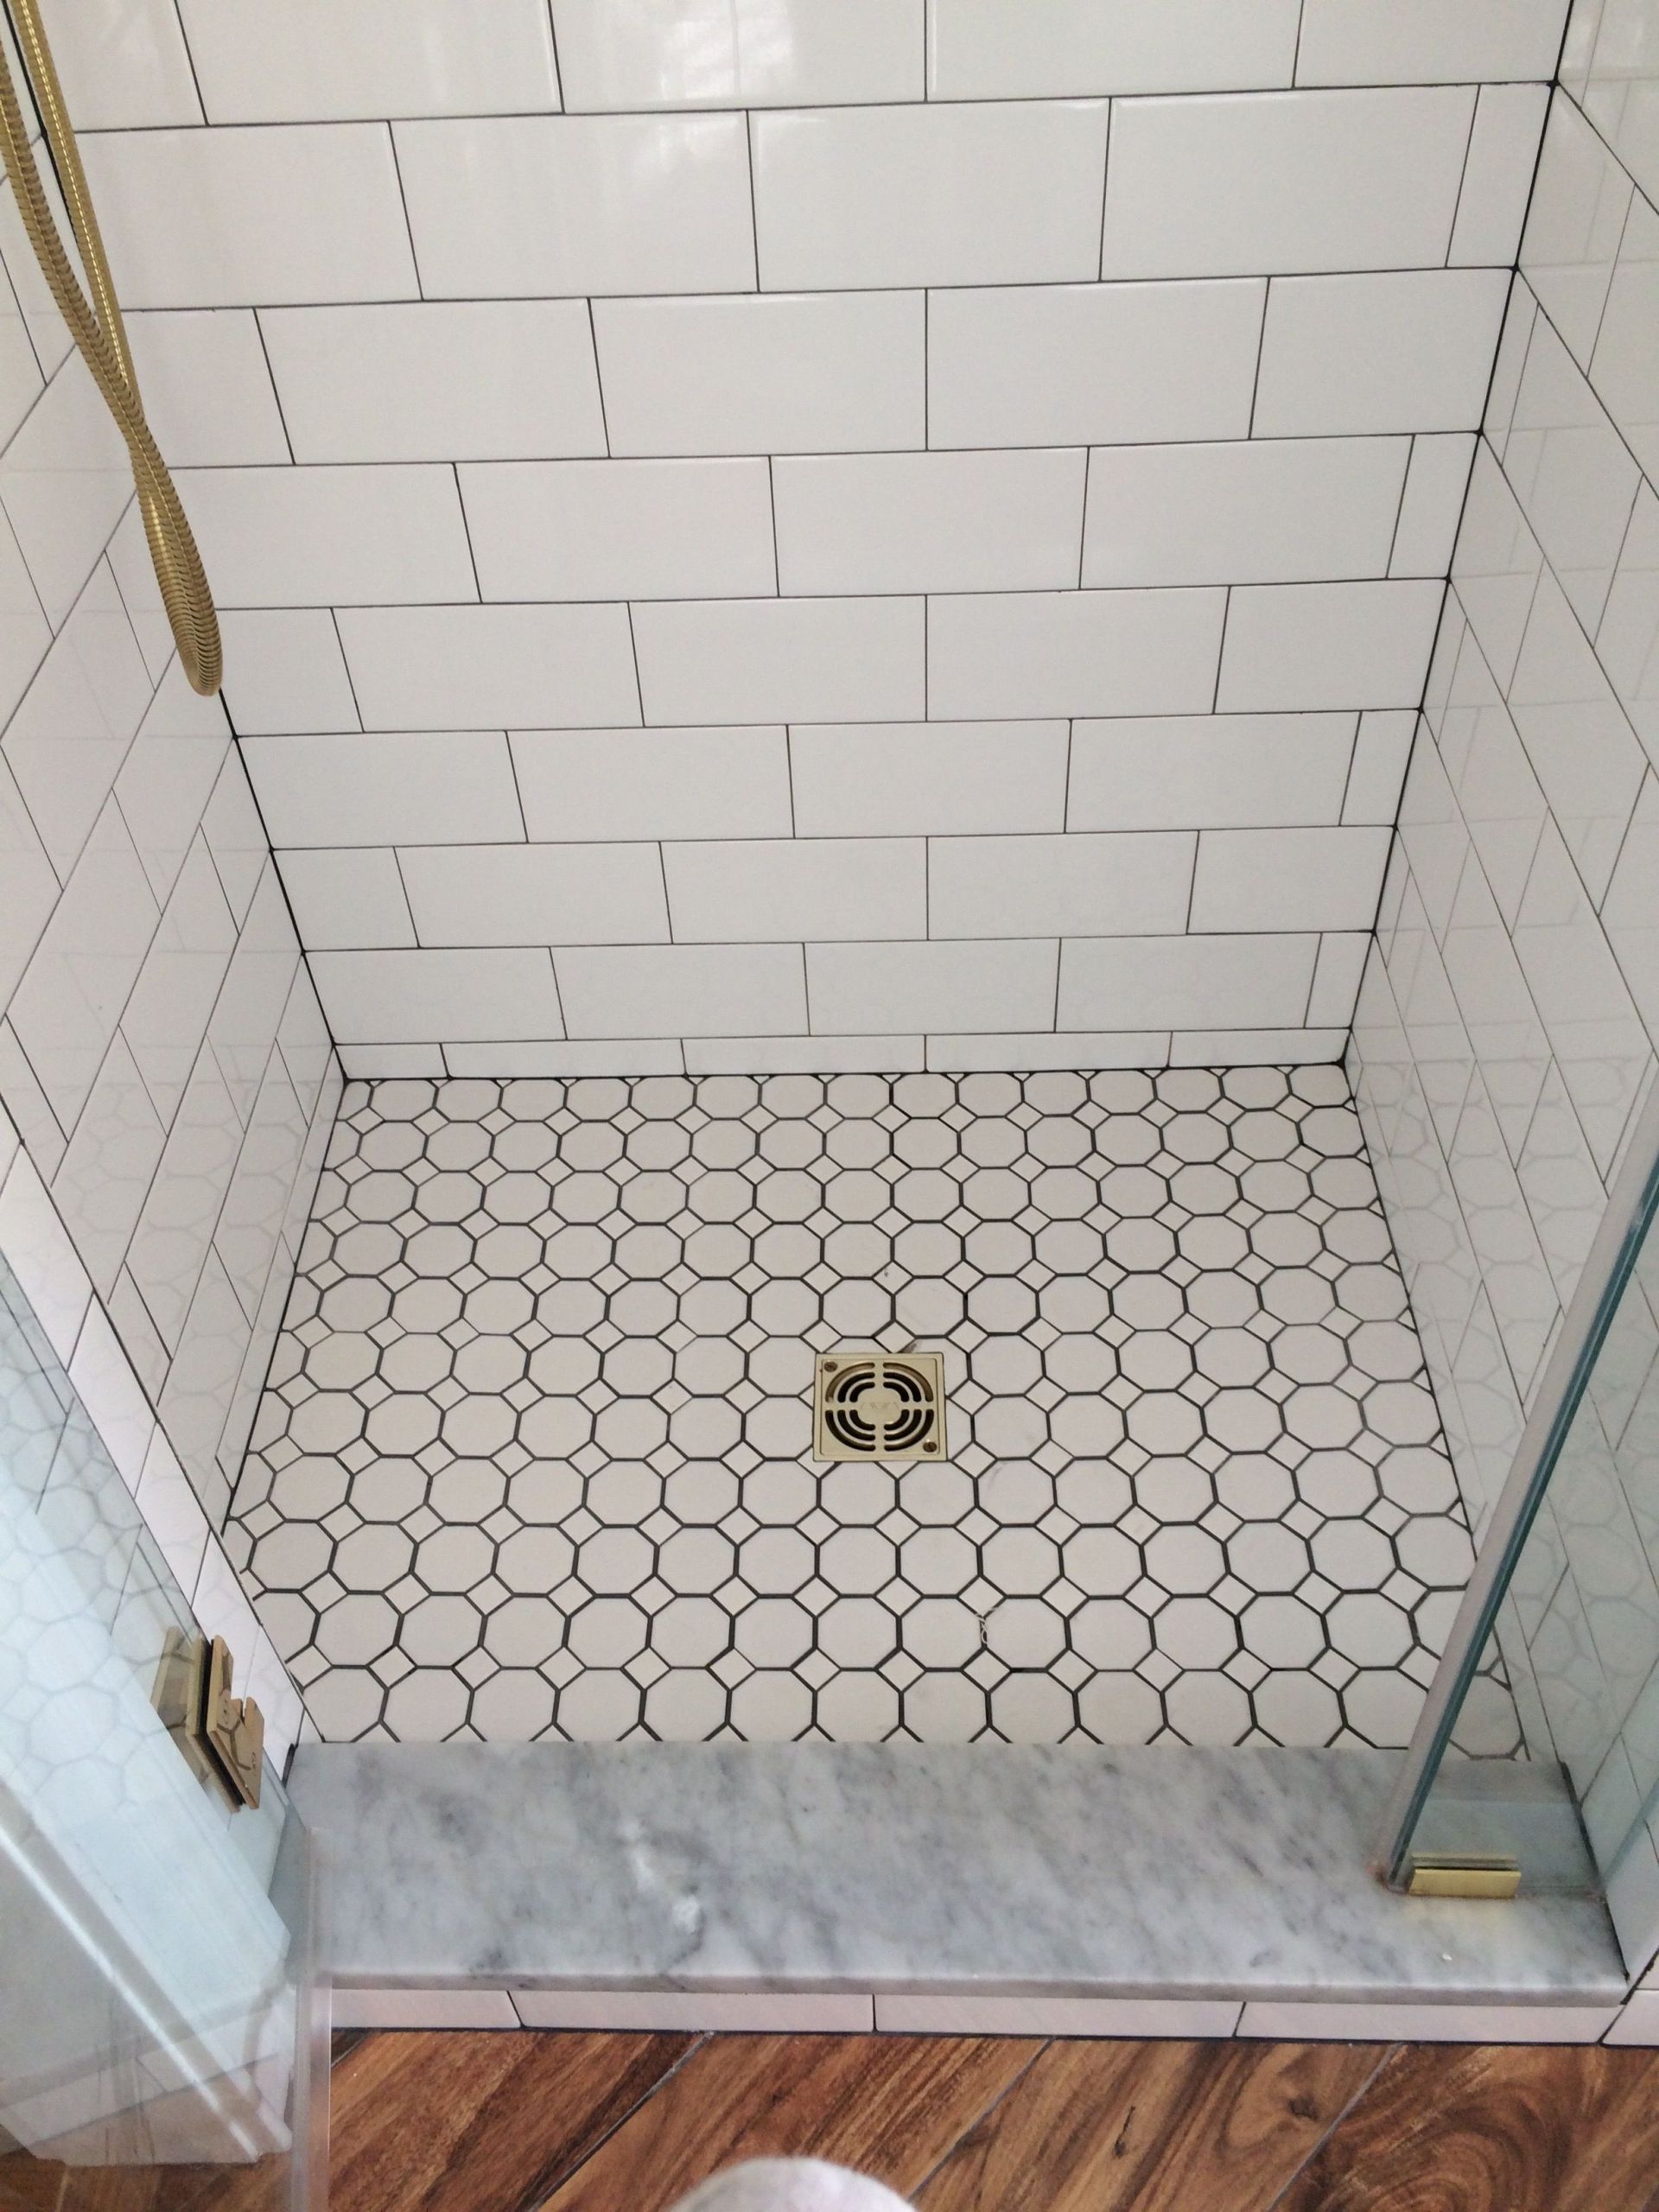 Octagon Tiles Bathroom Floor
 farmhouse bathroom shower floor octagon tiles